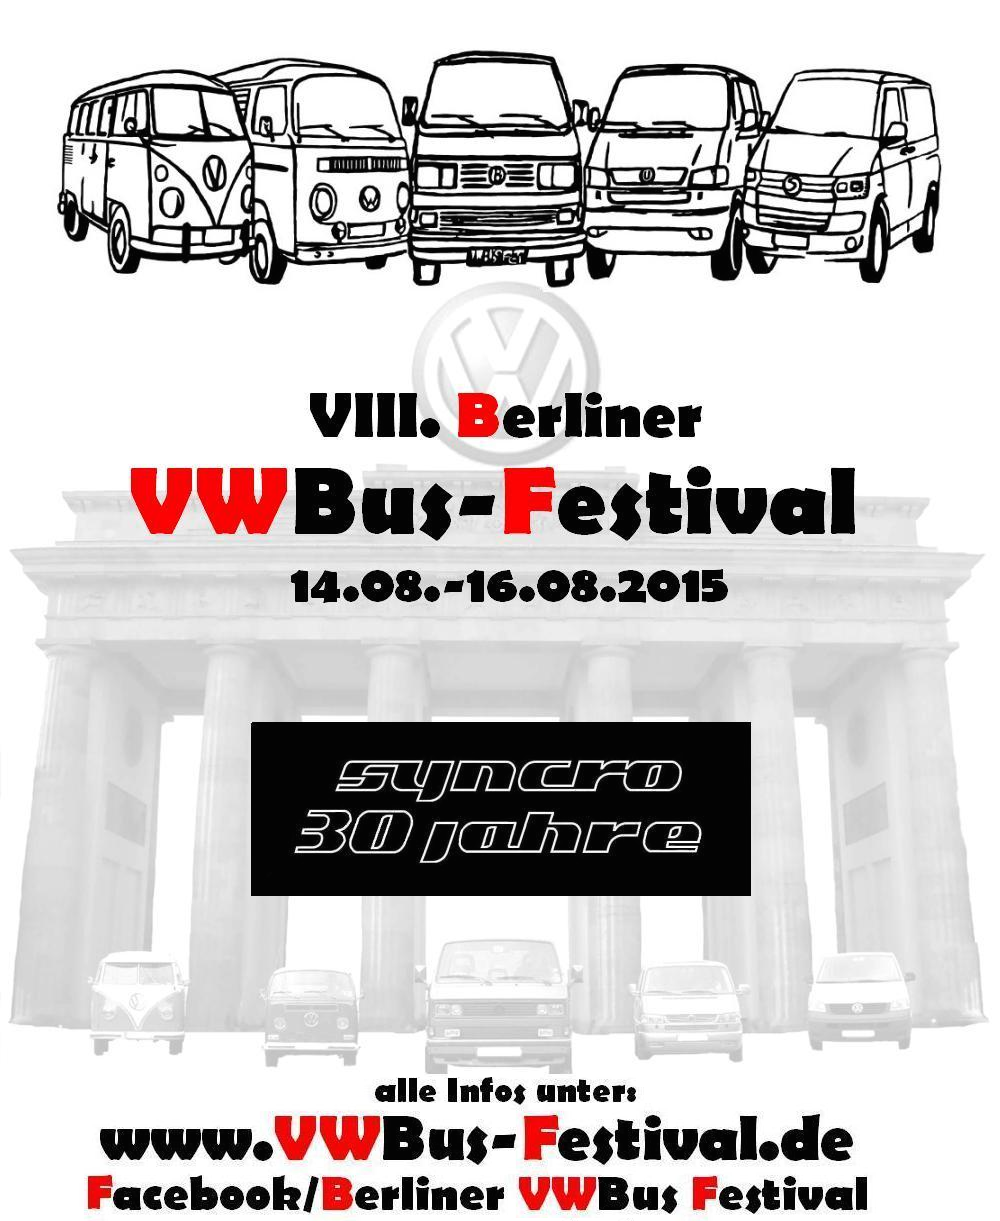 VWBus Festoval Berlin 2015